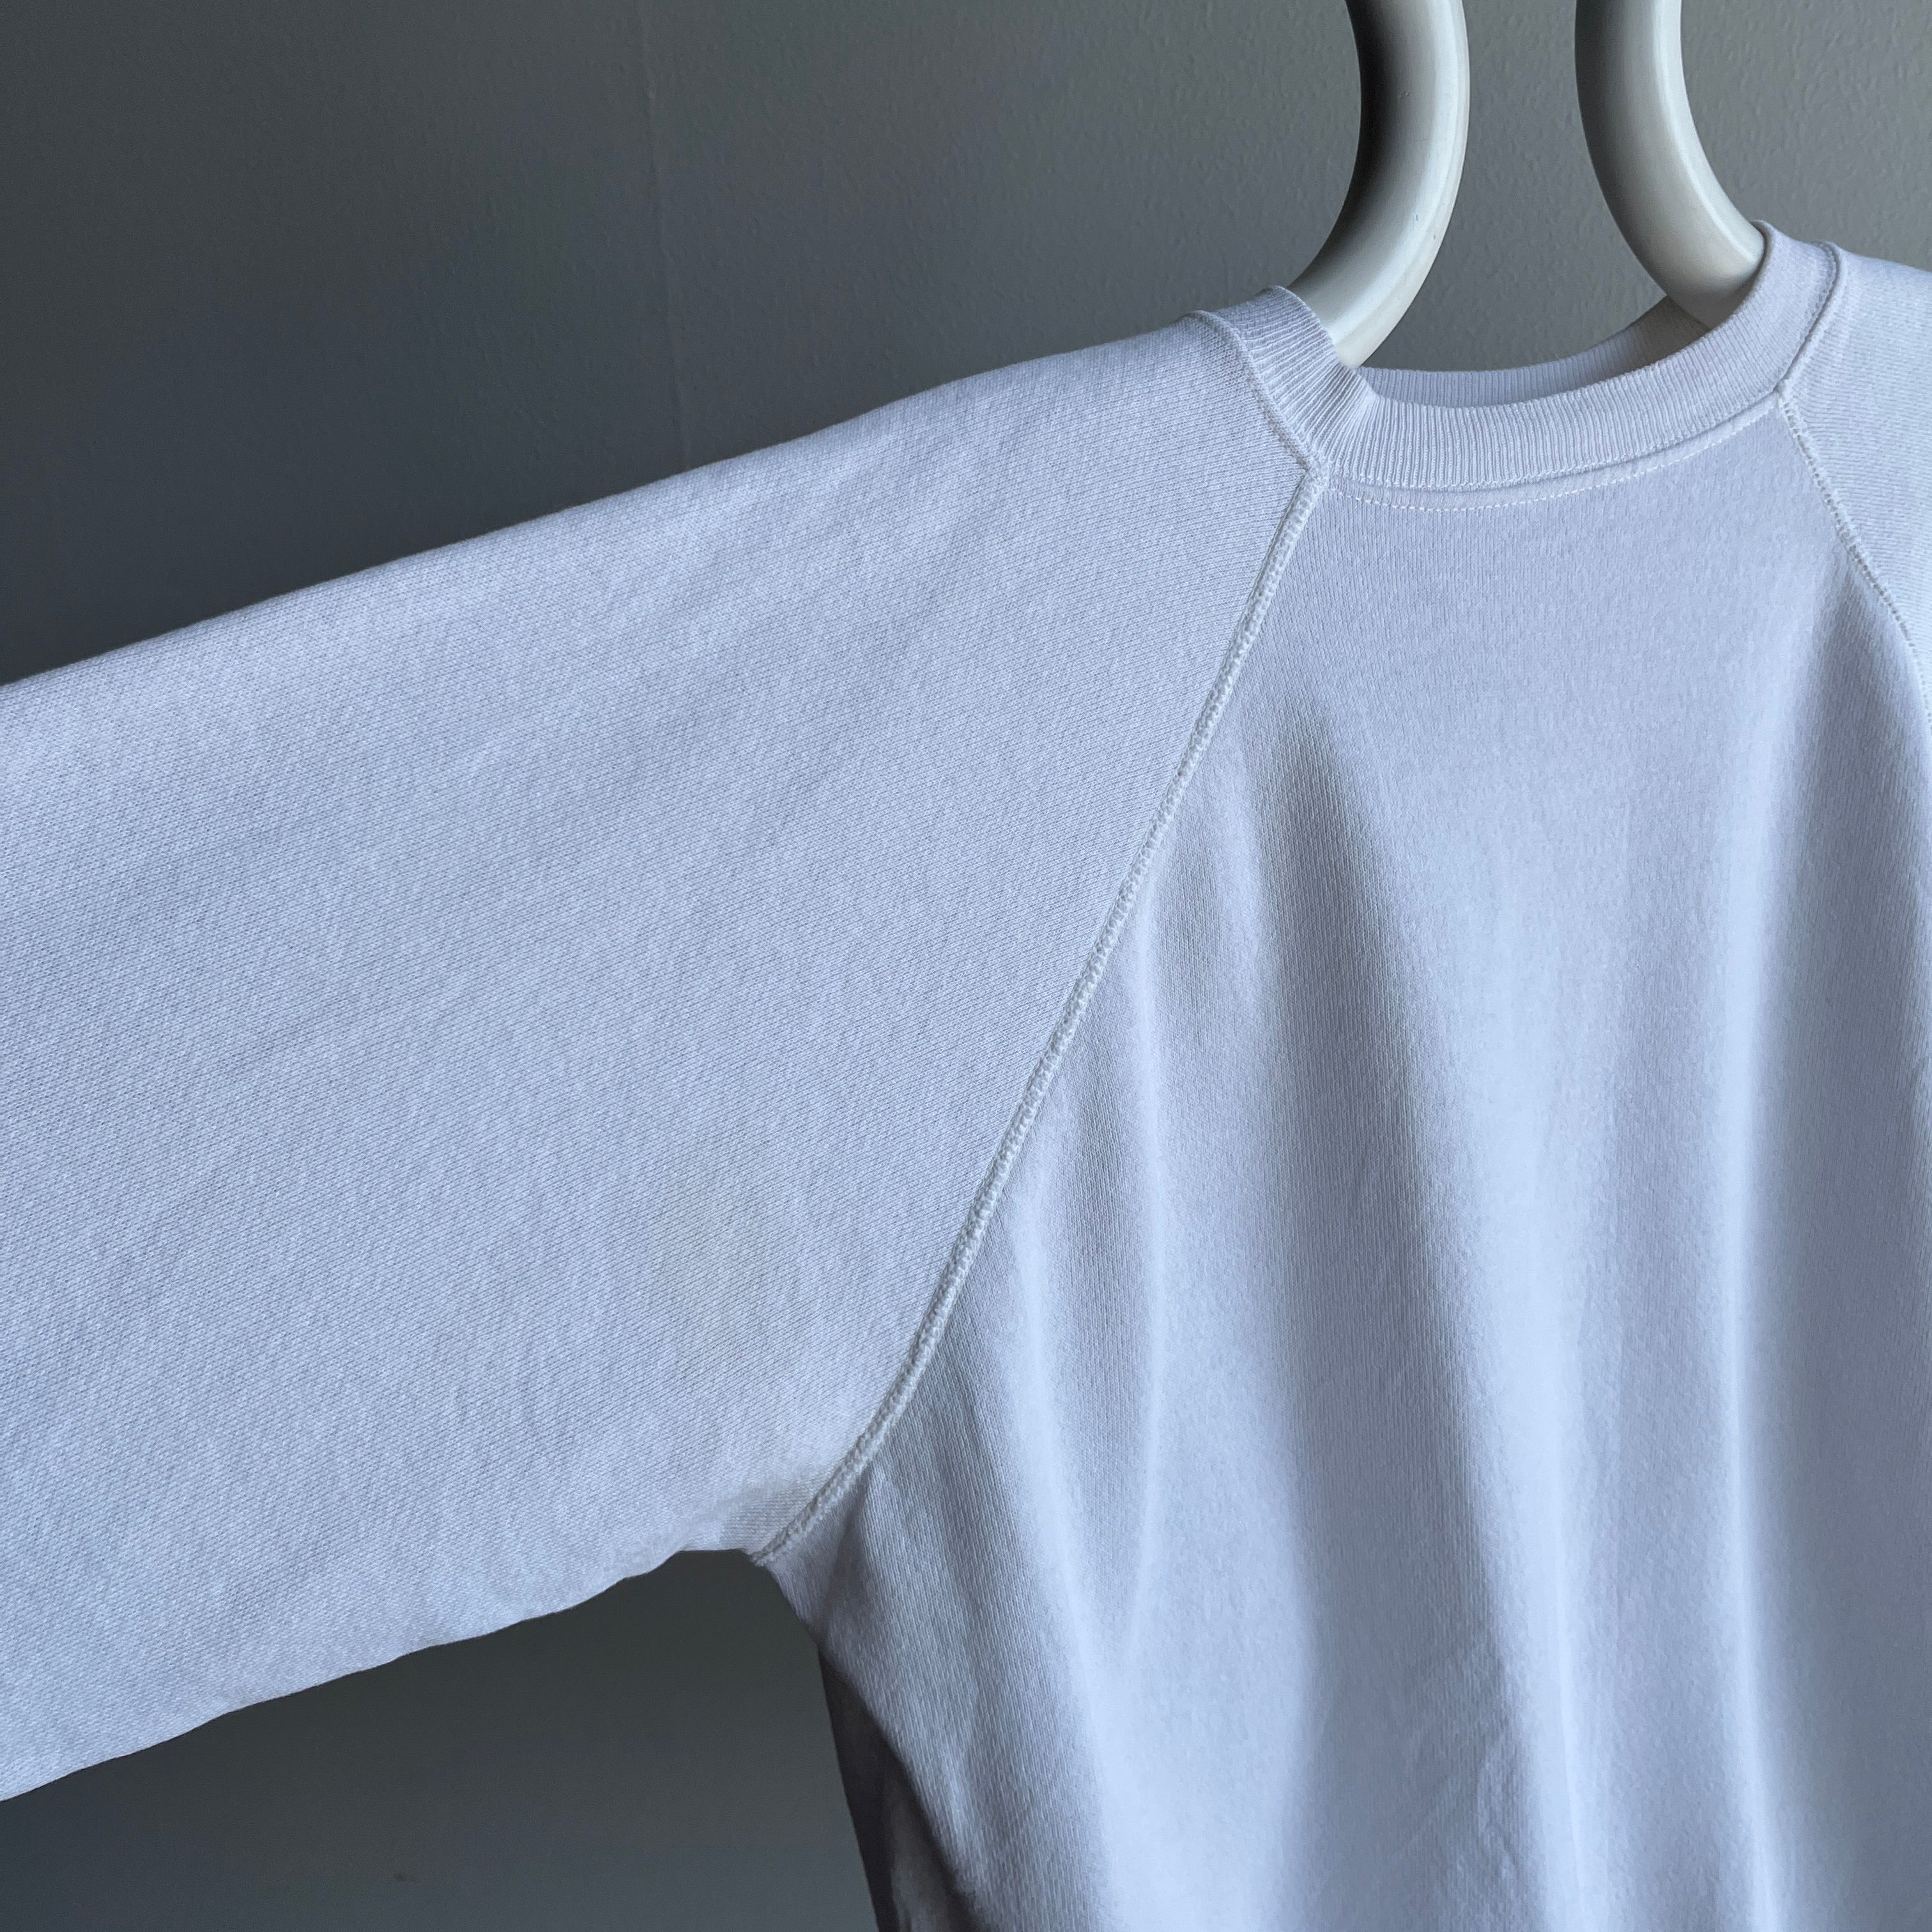 1990s Blank White Sweatshirt